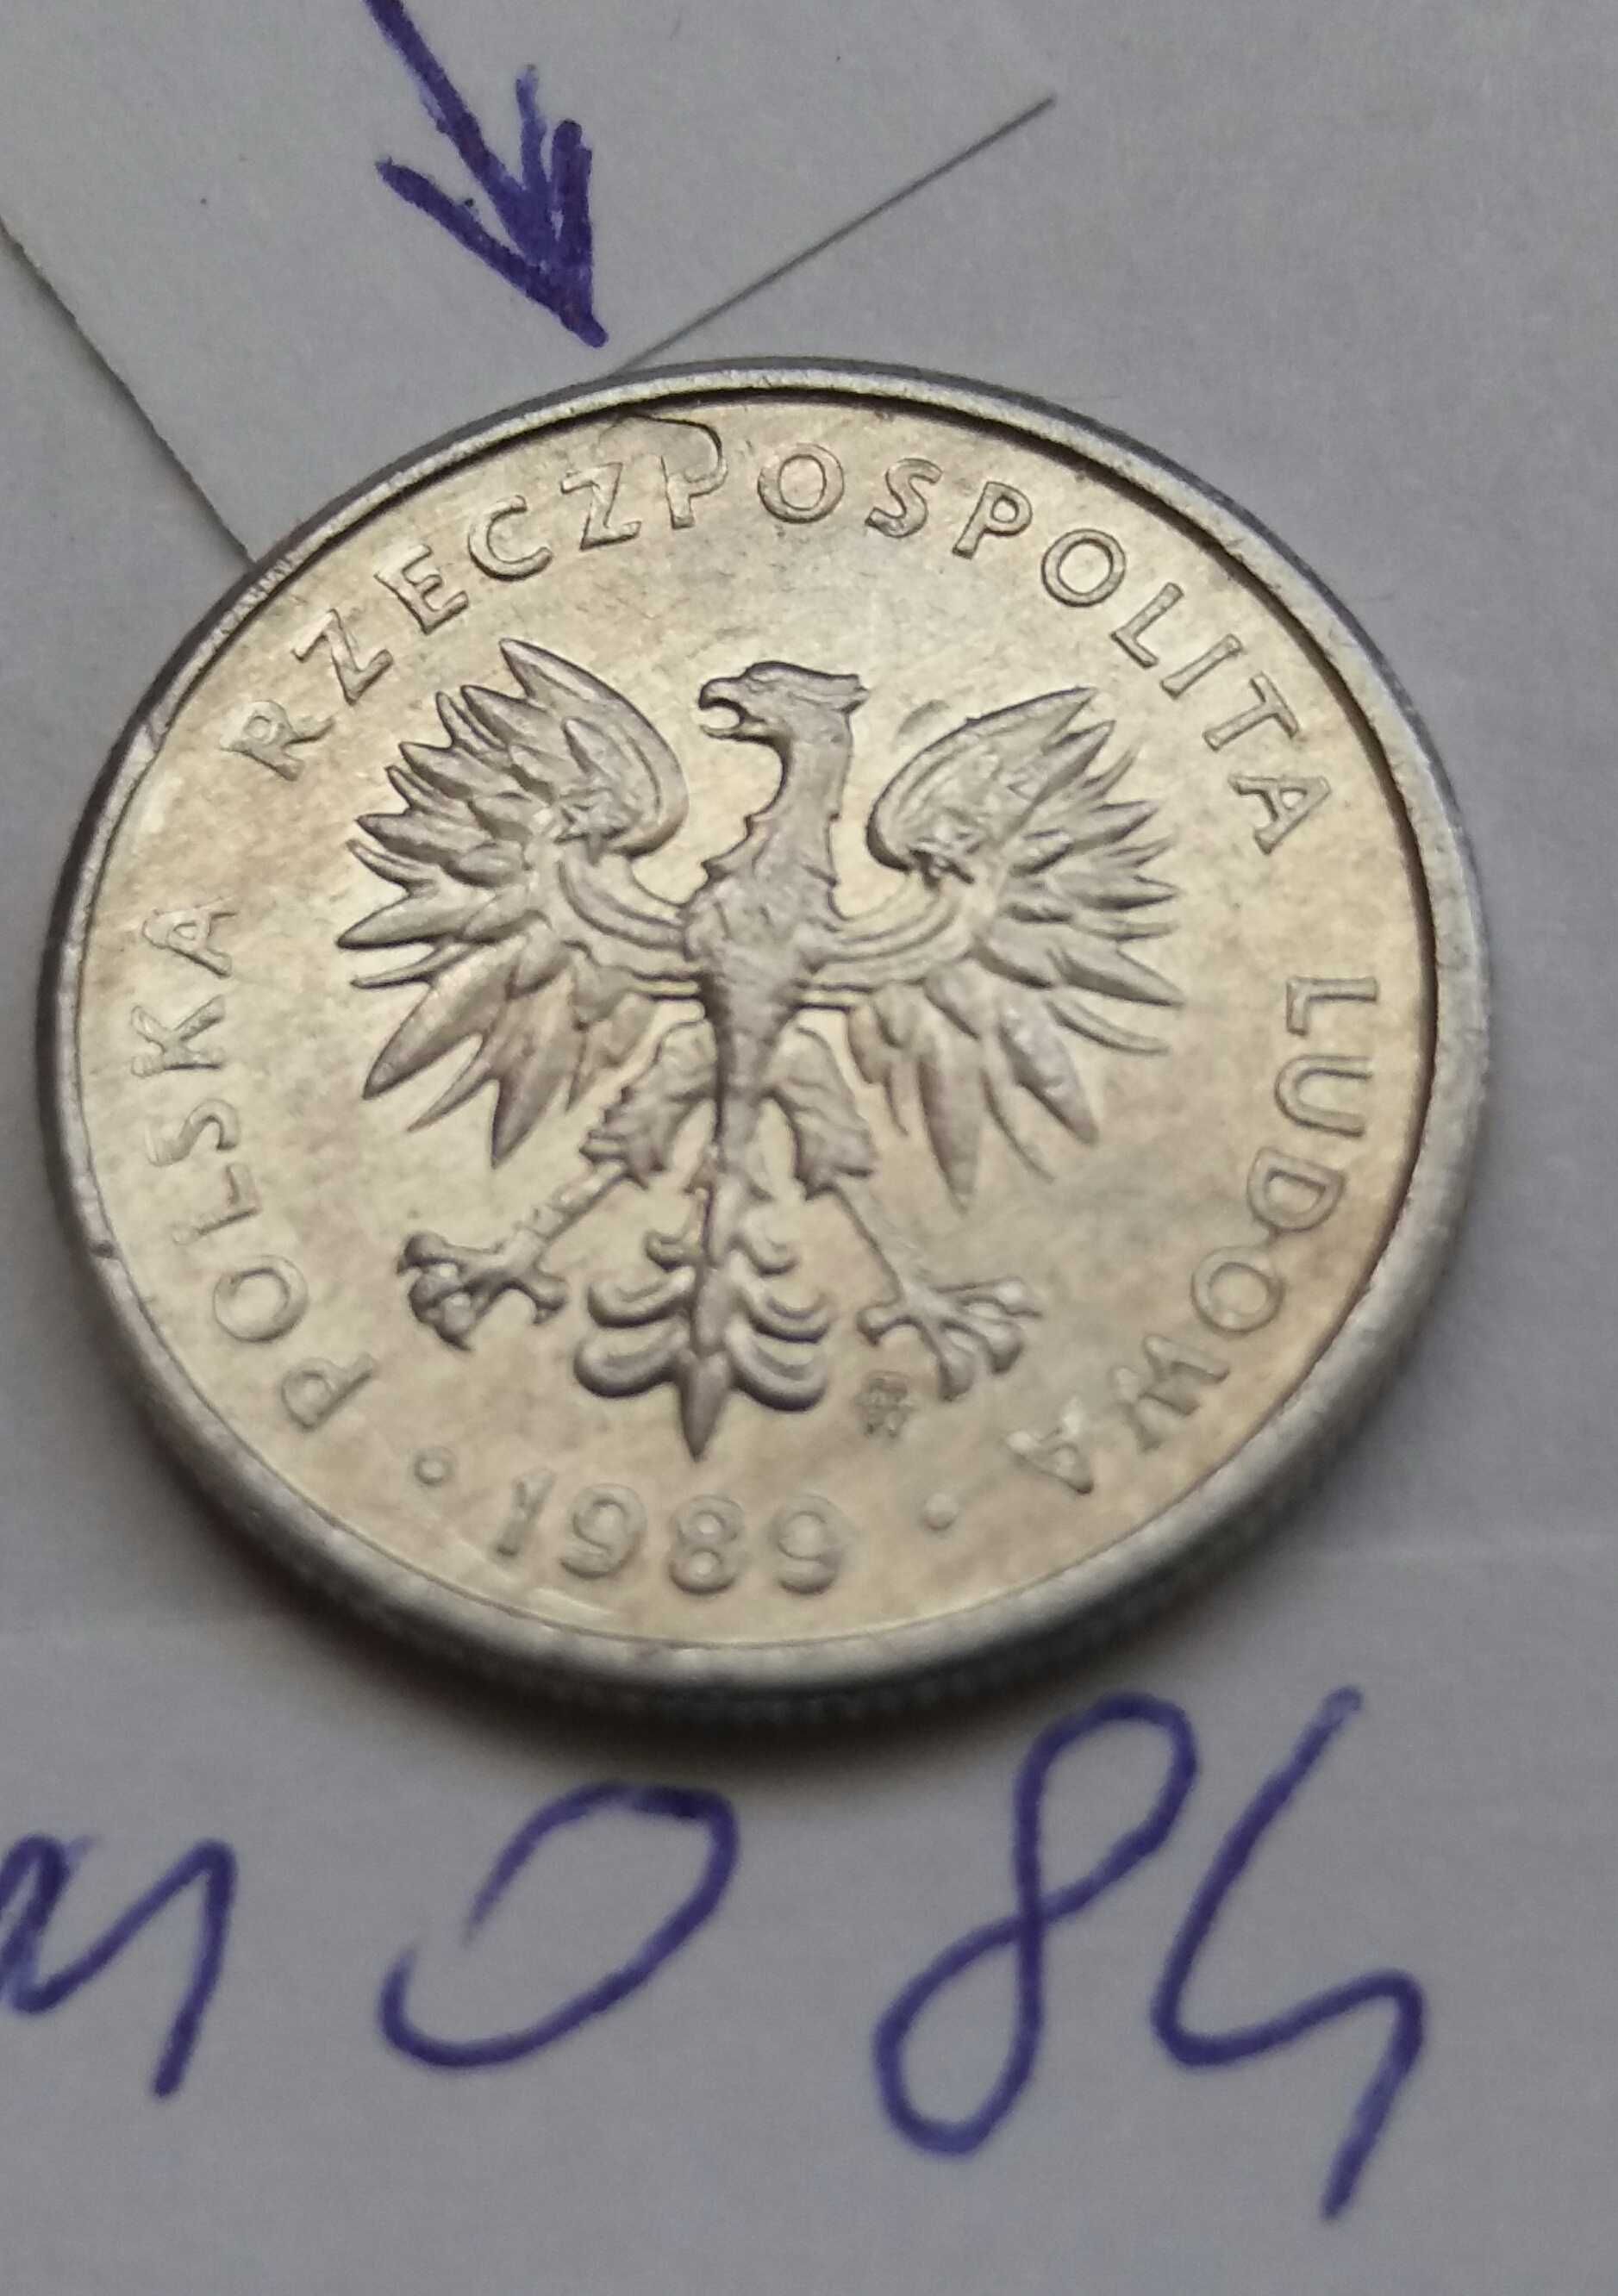 P+ M084, stara moneta 2 zł złote 1989 Polska uszkodzona